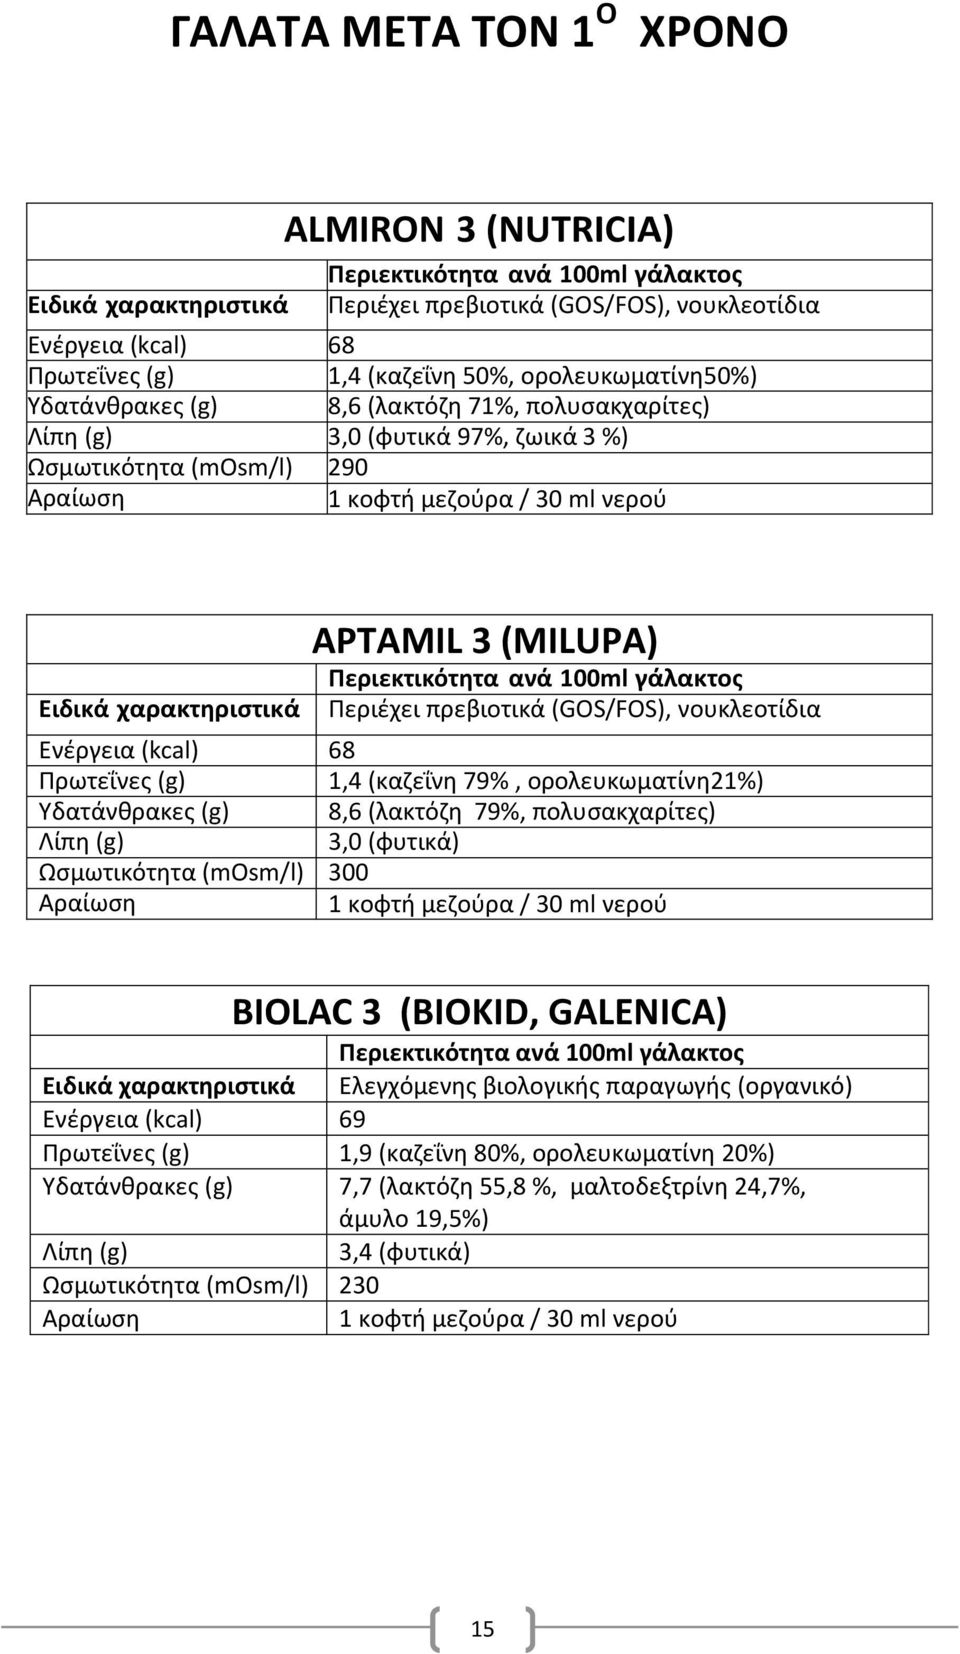 (καηεΐνθ 79%, ορολευκωματίνθ21%) Τδατάνκρακεσ (g) 8,6 (λακτόηθ 79%, πολυςακχαρίτεσ) 3,0 (φυτικά) Ωςμωτικότθτα (mosm/l) 300 BIOLAC 3 (BIOKID, GALENICA) Ελεγχόμενθσ βιολογικισ παραγωγισ